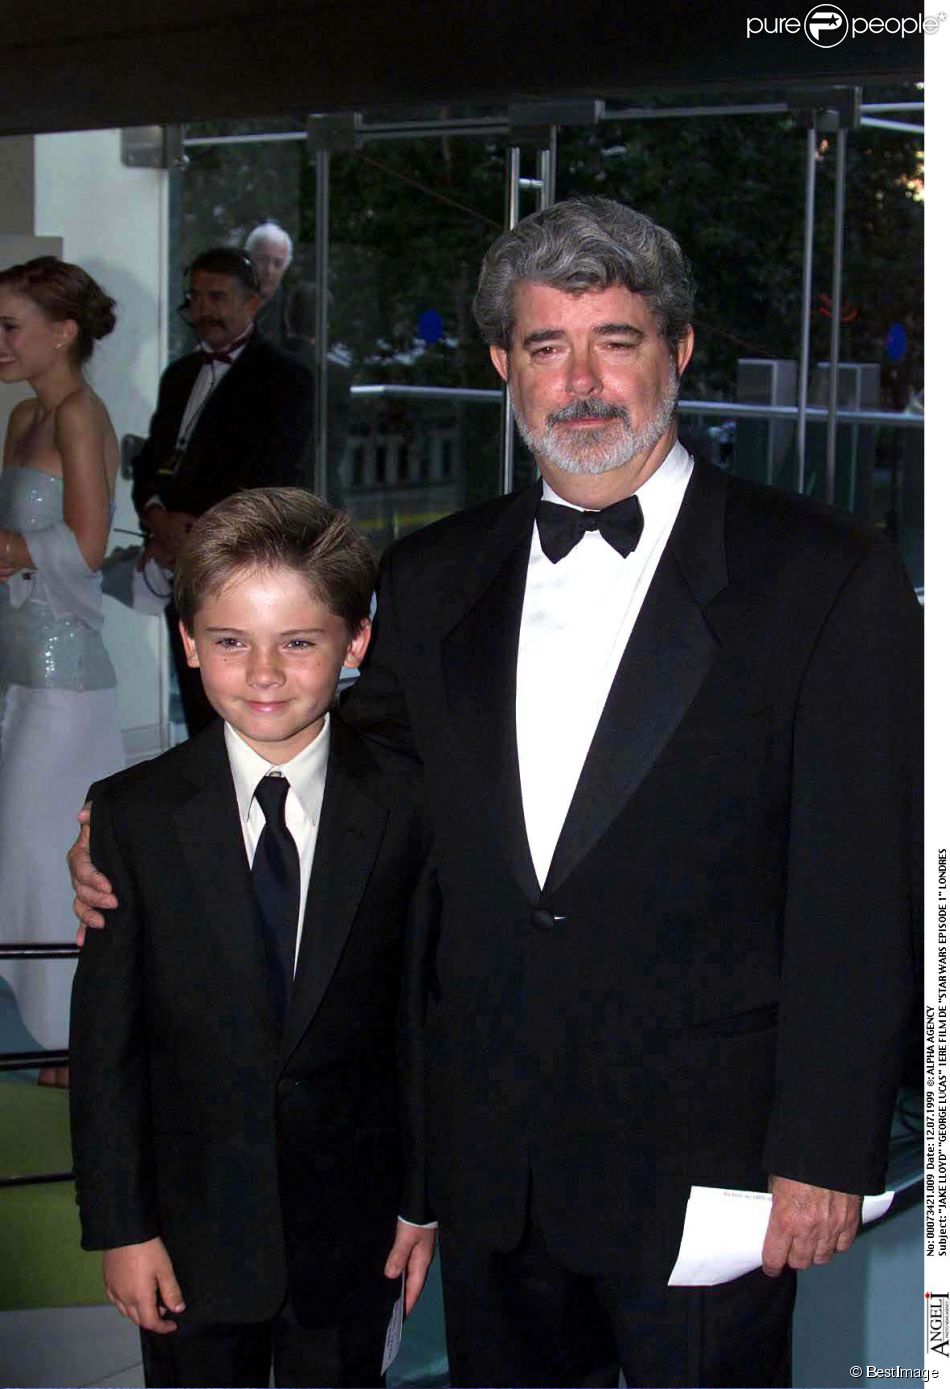  Jake Lloyd et George Lucas lors de la premi&amp;egrave;re de Star Wars : La menace fant&amp;ocirc;me, &amp;agrave; Londres le 12 juillet 1999 